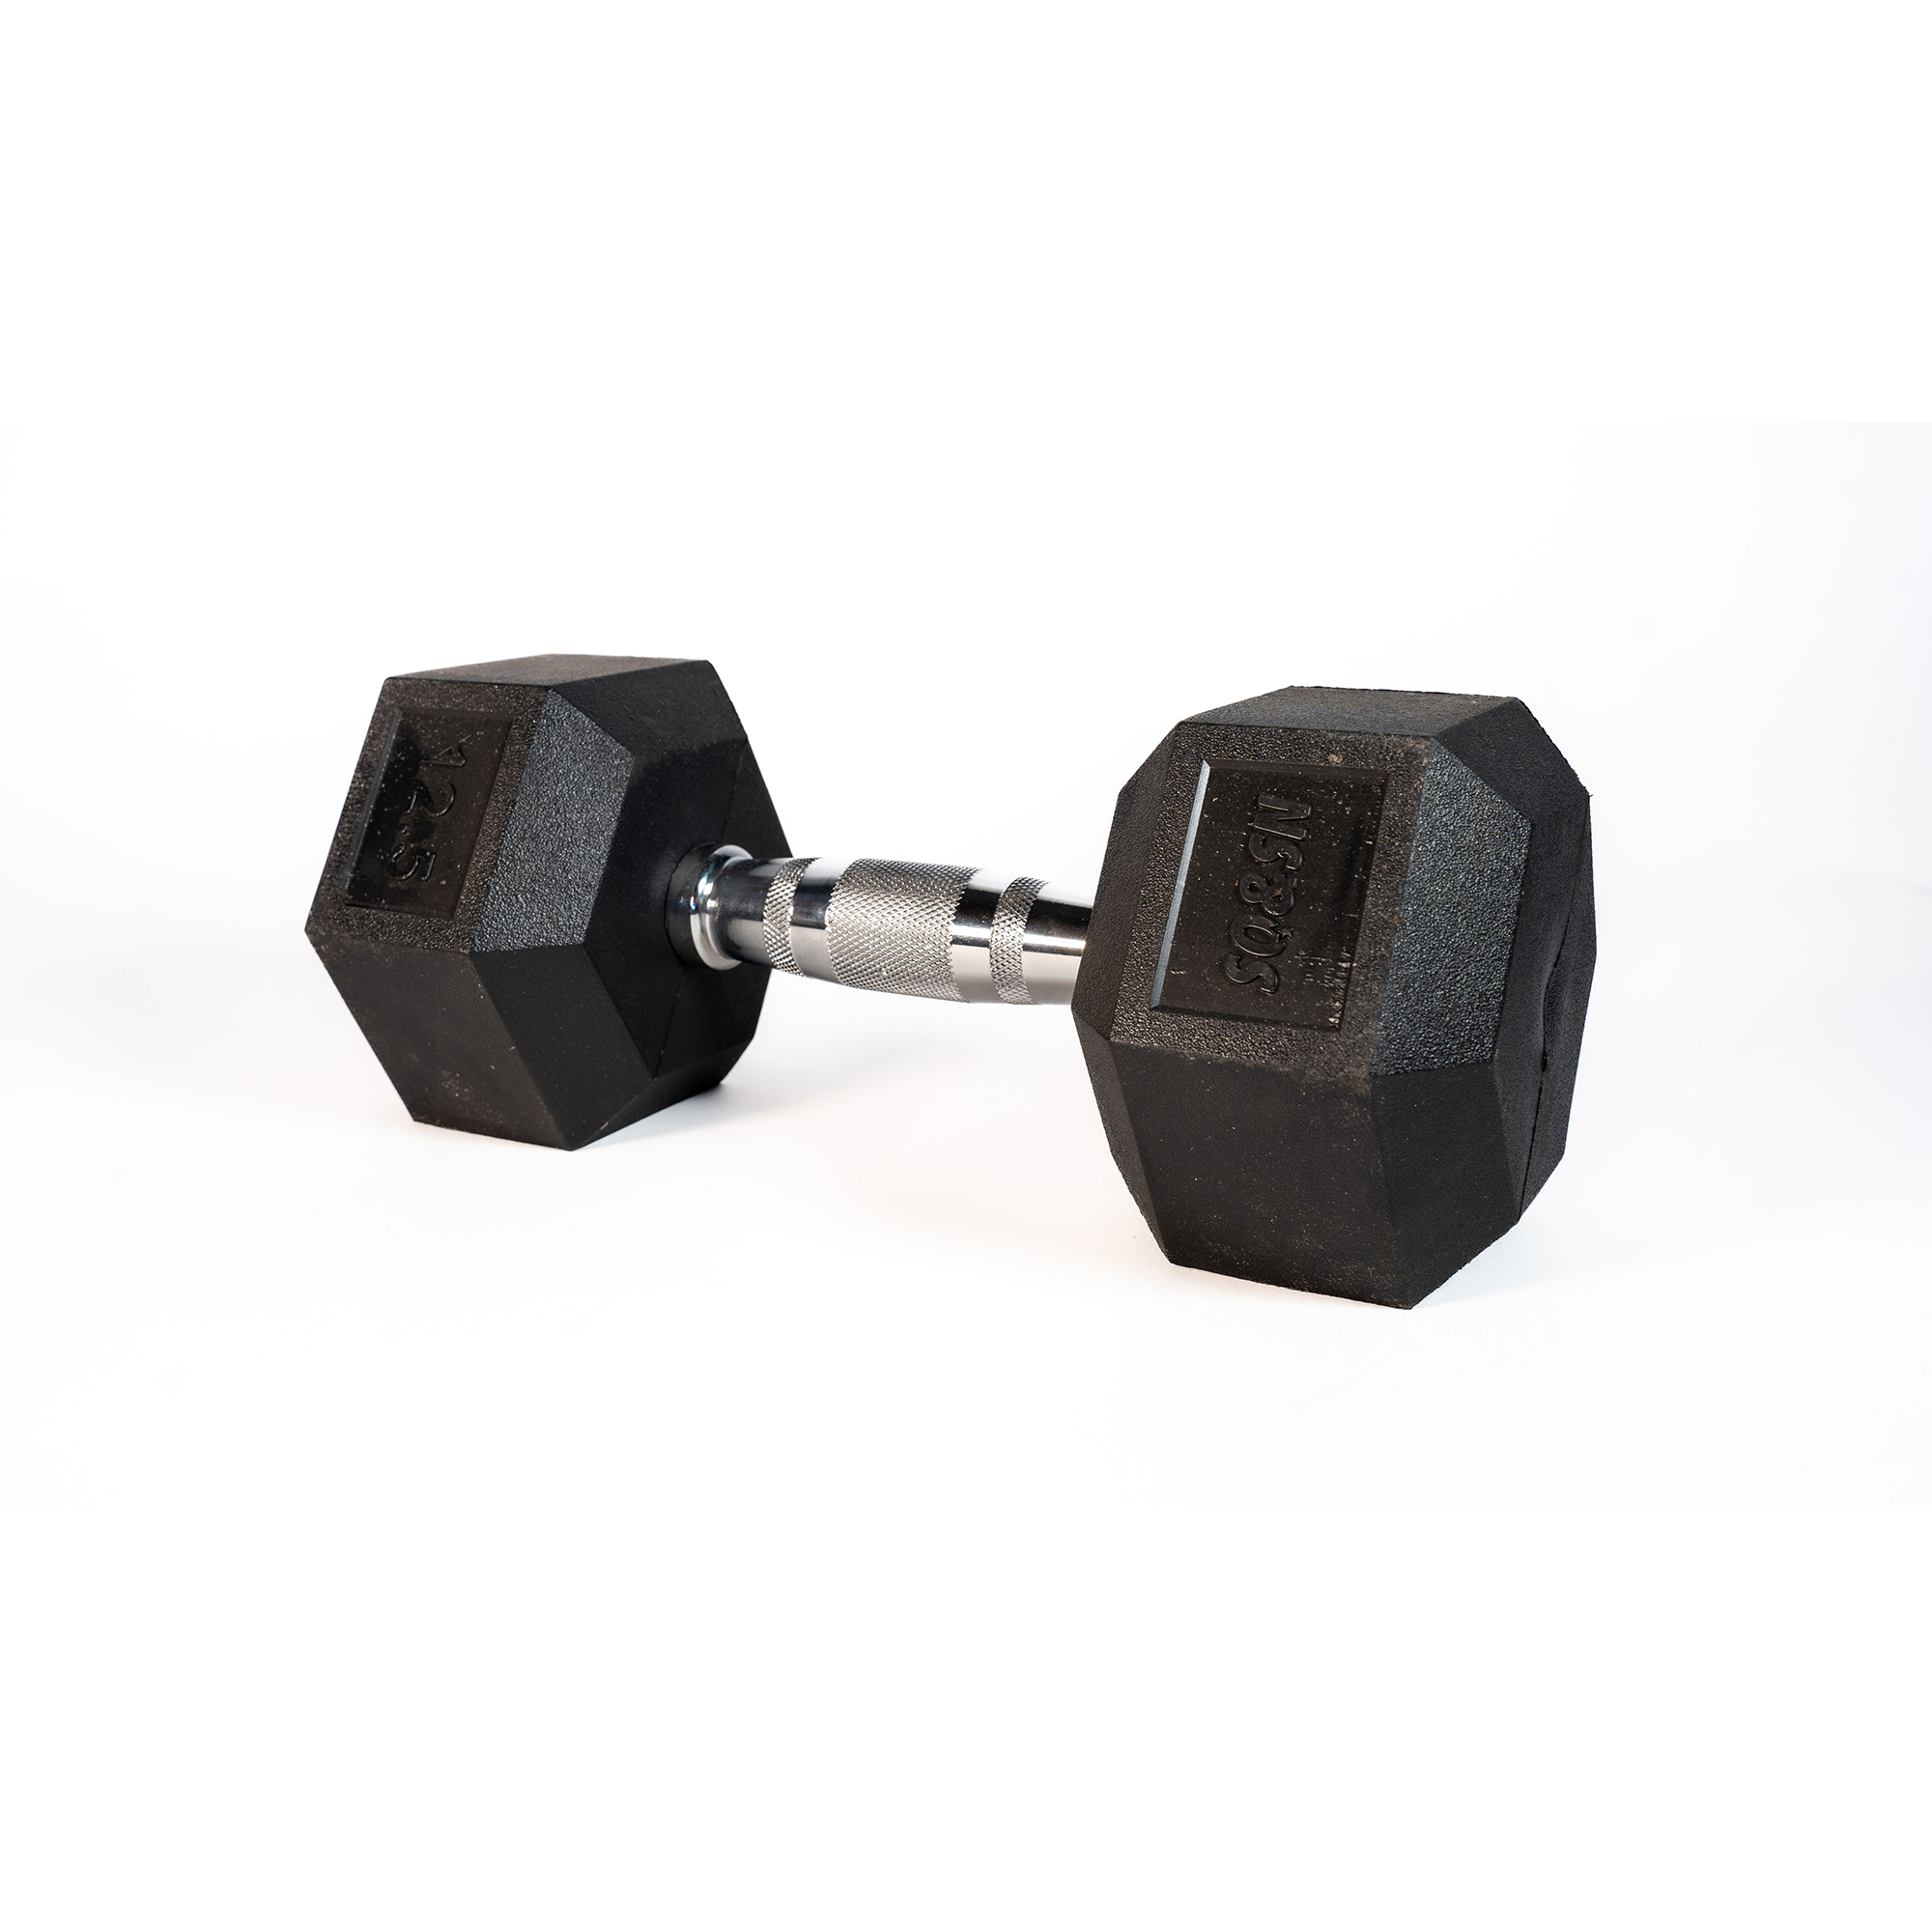 Brug SQ&SN Hexagon Håndvægt (12,5 kg) med forkromet greb. Udstyr til crossfit træning, styrketræning og funktionel træning til en forbedret oplevelse